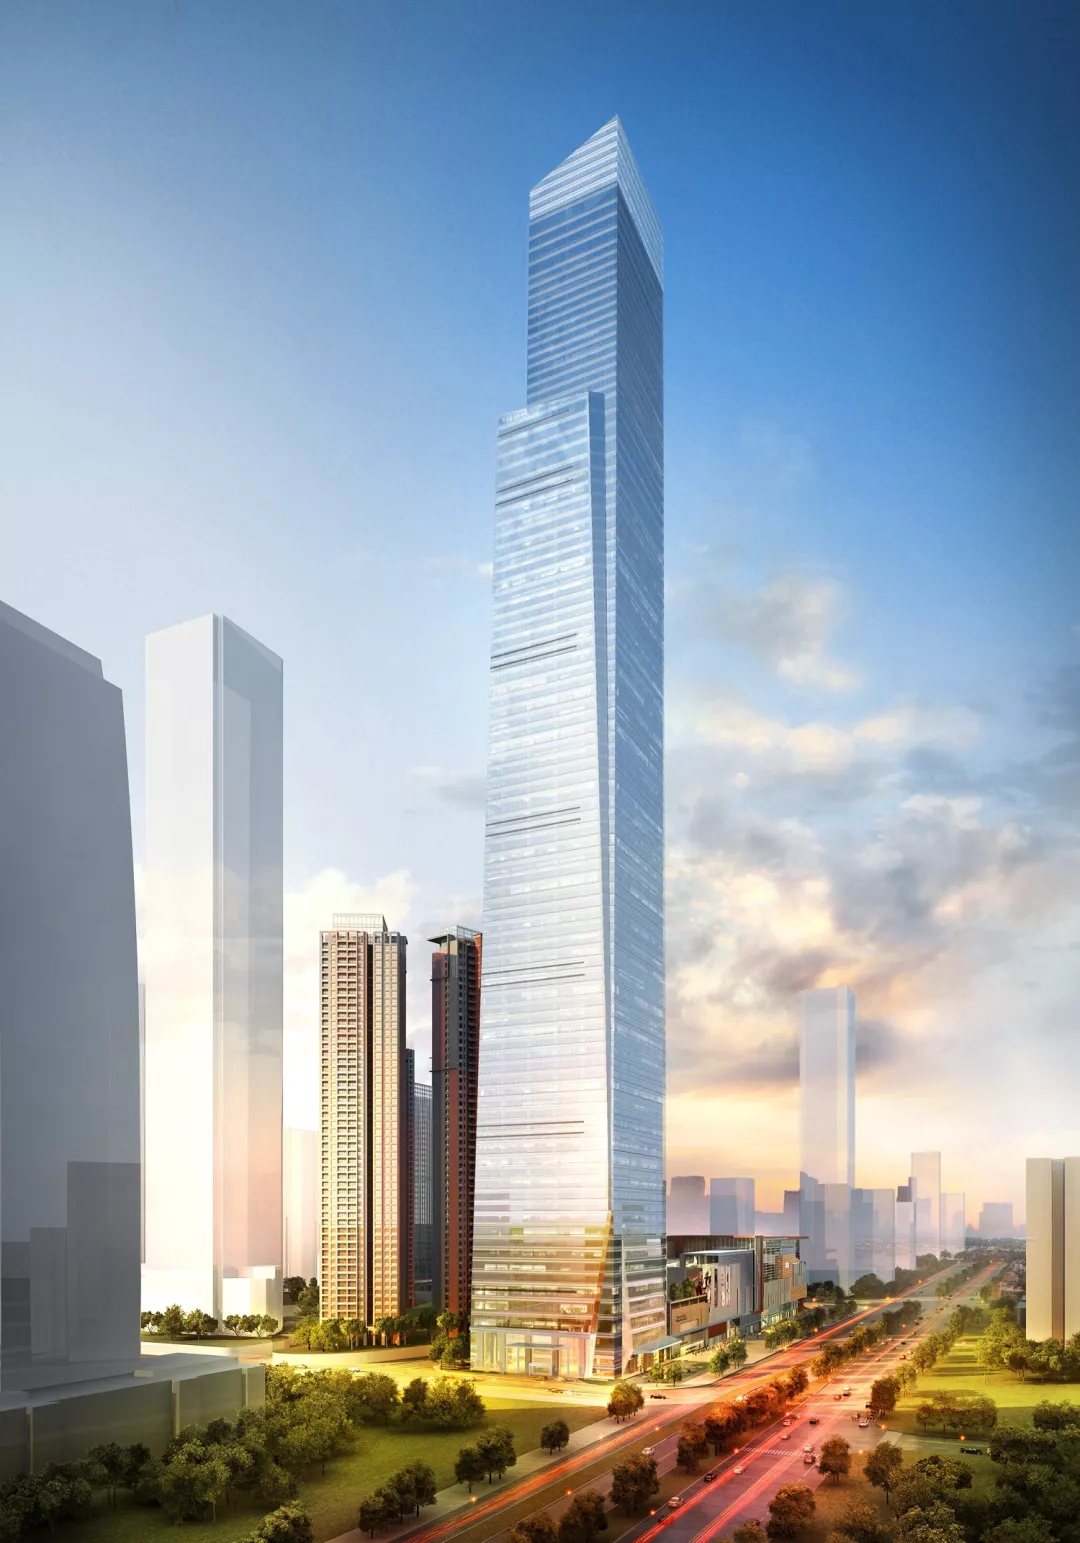 设计共有94层广西在建第一高楼385米埃及新首都中央商务区标志塔在建